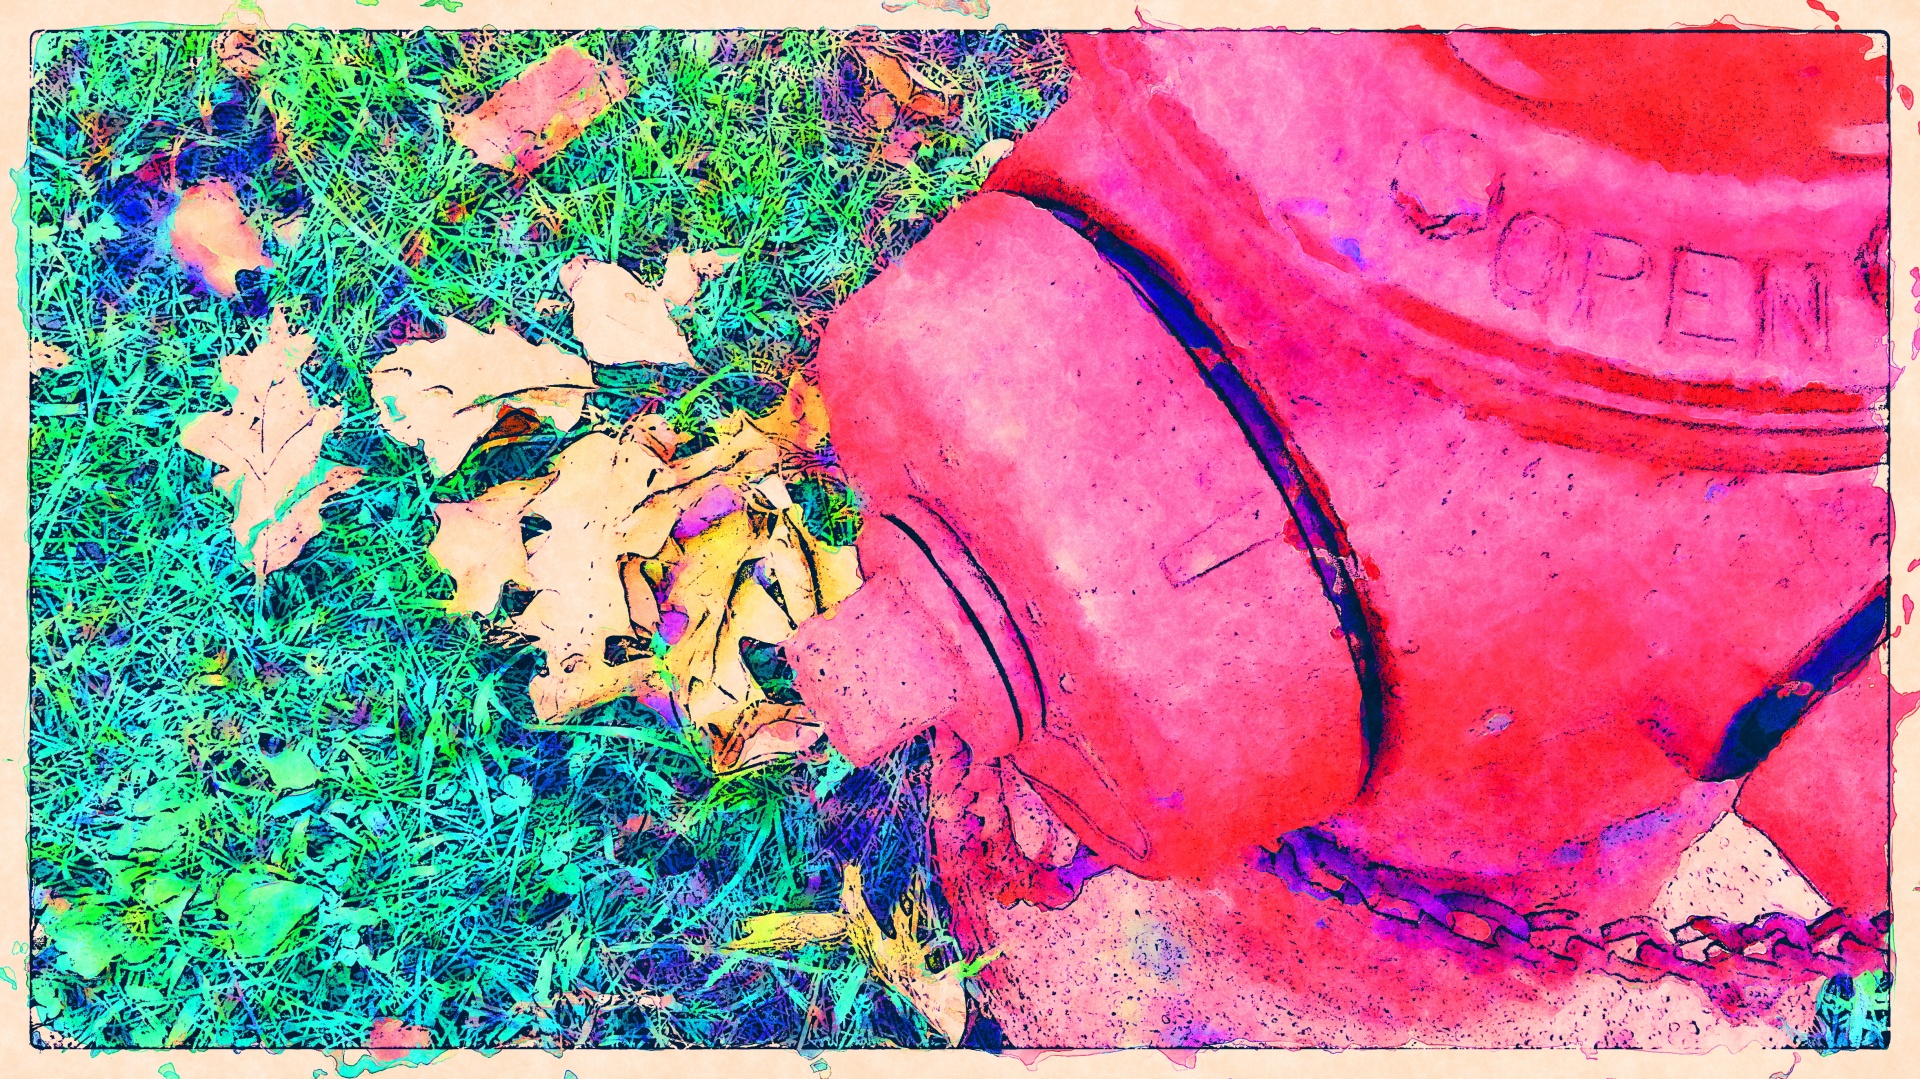 Podzimní požární hydrant